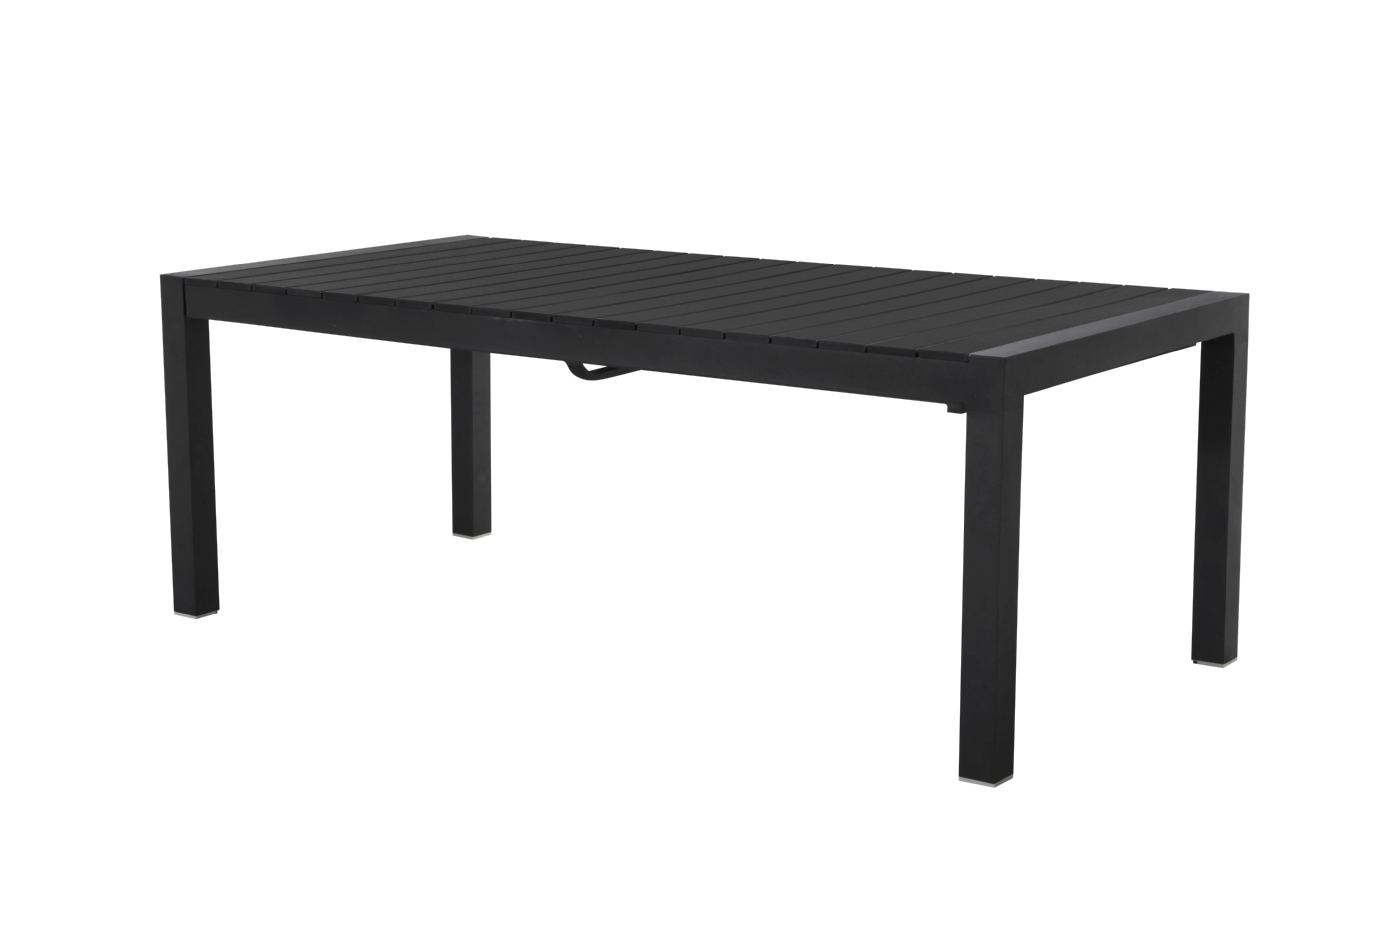 Living Outdoor - Lyoe Garden Table 205/275 x 100 cm. - Aluminium/Polywood - Black (621248)